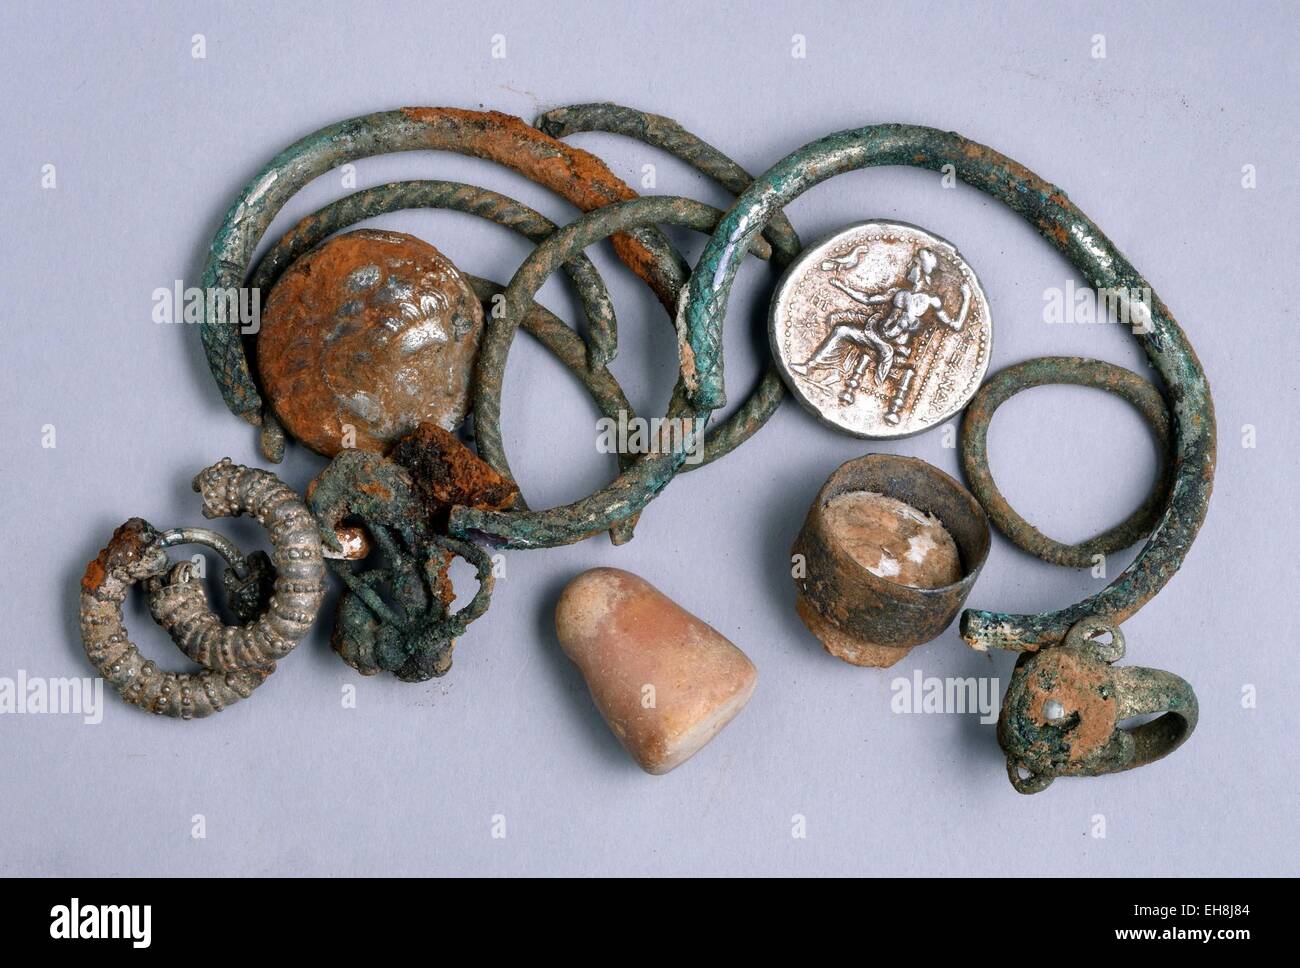 (150309) -- Jérusalem, 9 mars 2015 (Xinhua) -- photo non datée publiée par Israel Antiquities Authority montre la cache d'objets en argent trouvés dans le nord d'Israël : deux pièces d'Alexandre de Macédoine, trois, quatre Bagues Bracelets Boucles d'oreilles décorées, deux, trois boucles d'autres (probablement en argent) et une petite pierre de poids. Les pièces rares et des bijoux de l'époque d'Alexandre le Grand ont été trouvés par hasard dans une grotte dans le nord d'Israël, des fonctionnaires de l'Autorité des antiquités d'Israël a dit le 9 mars 2015. Les 2 300 ans, comprend les pièces d'argent cache d'Alexandre le Grand, qui conquere Banque D'Images